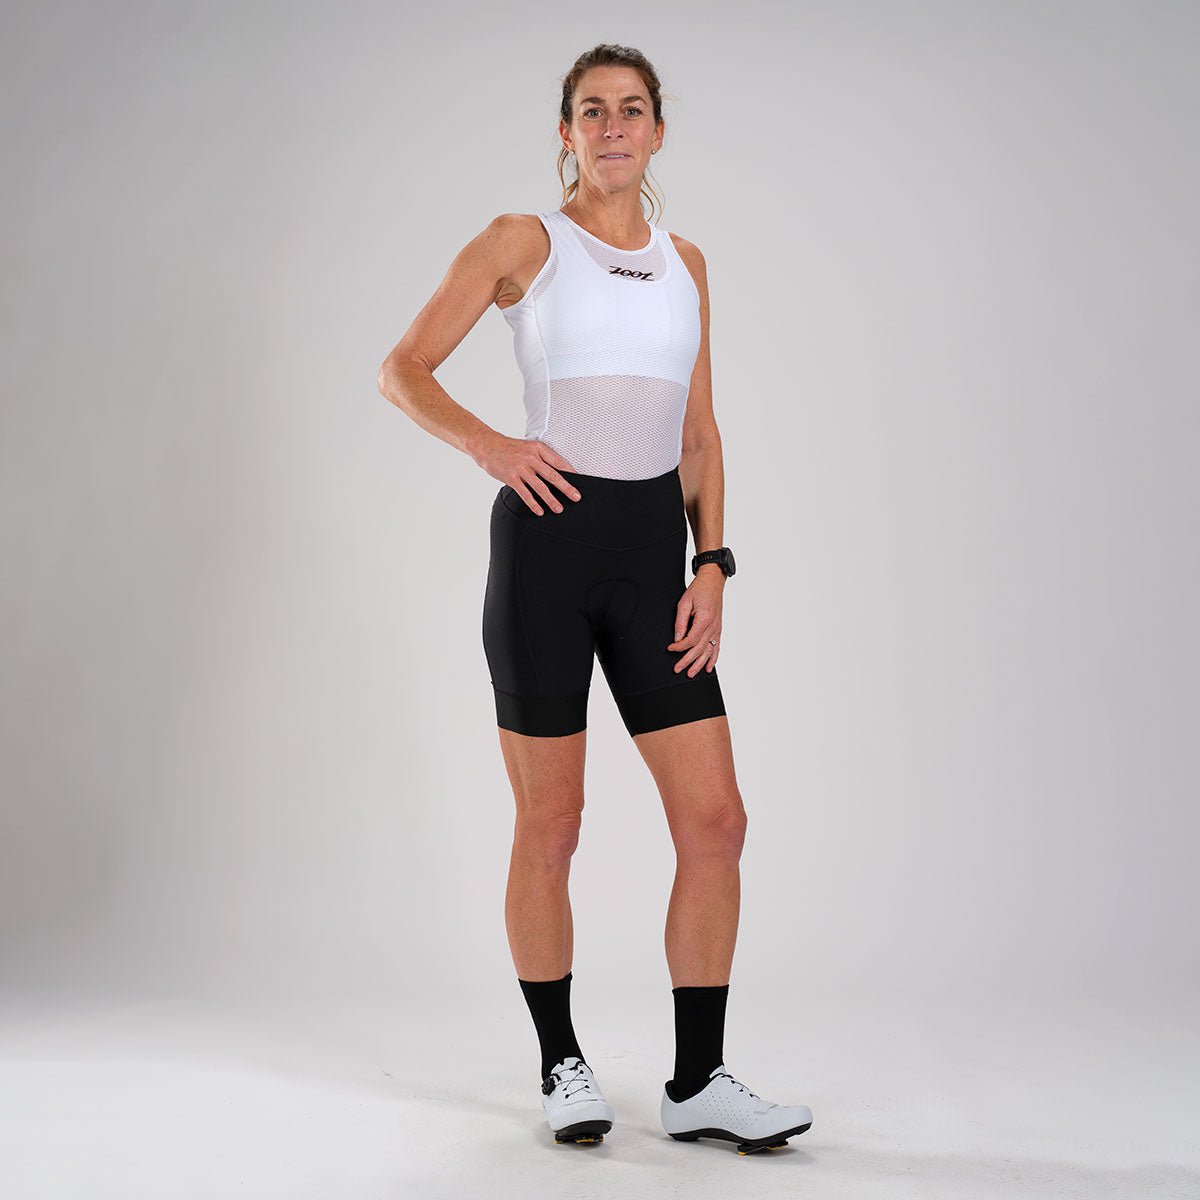 Zoot Sports CYCLE BASE LAYERS Women's LTD Cycle Base Layer - White